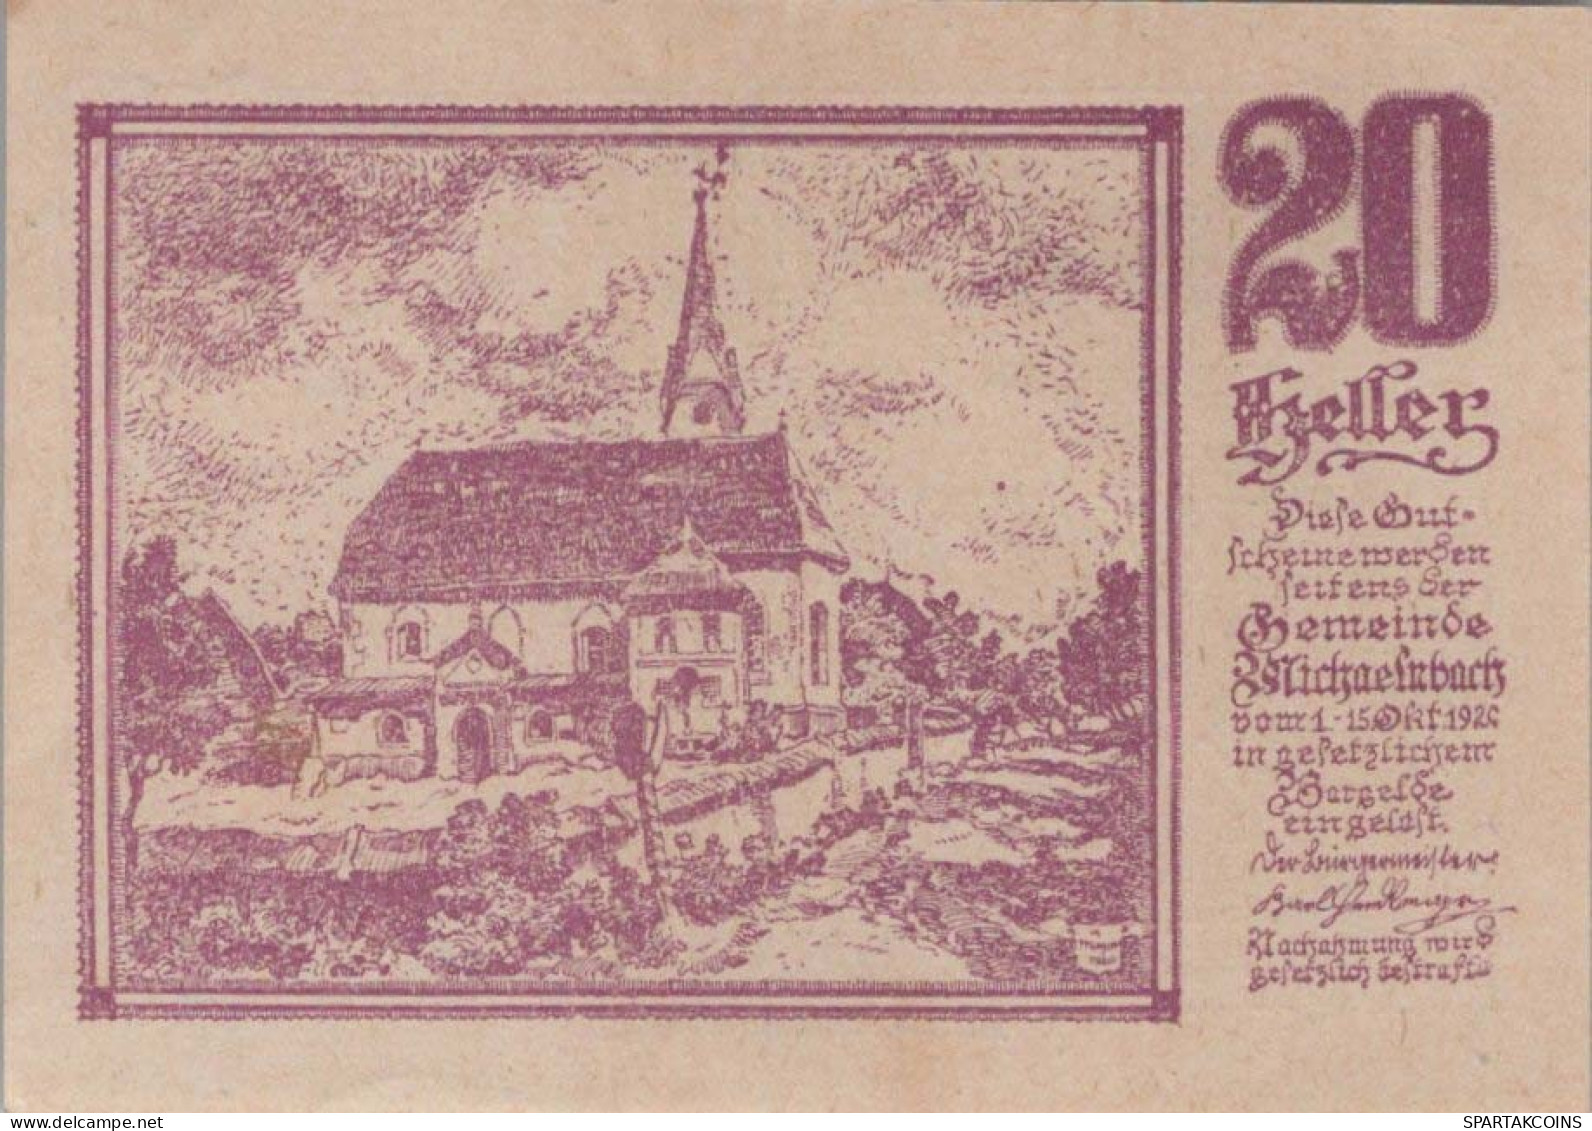 20 HELLER 1920 Stadt MICHAELNBACH Oberösterreich Österreich Notgeld #PD800 - [11] Local Banknote Issues